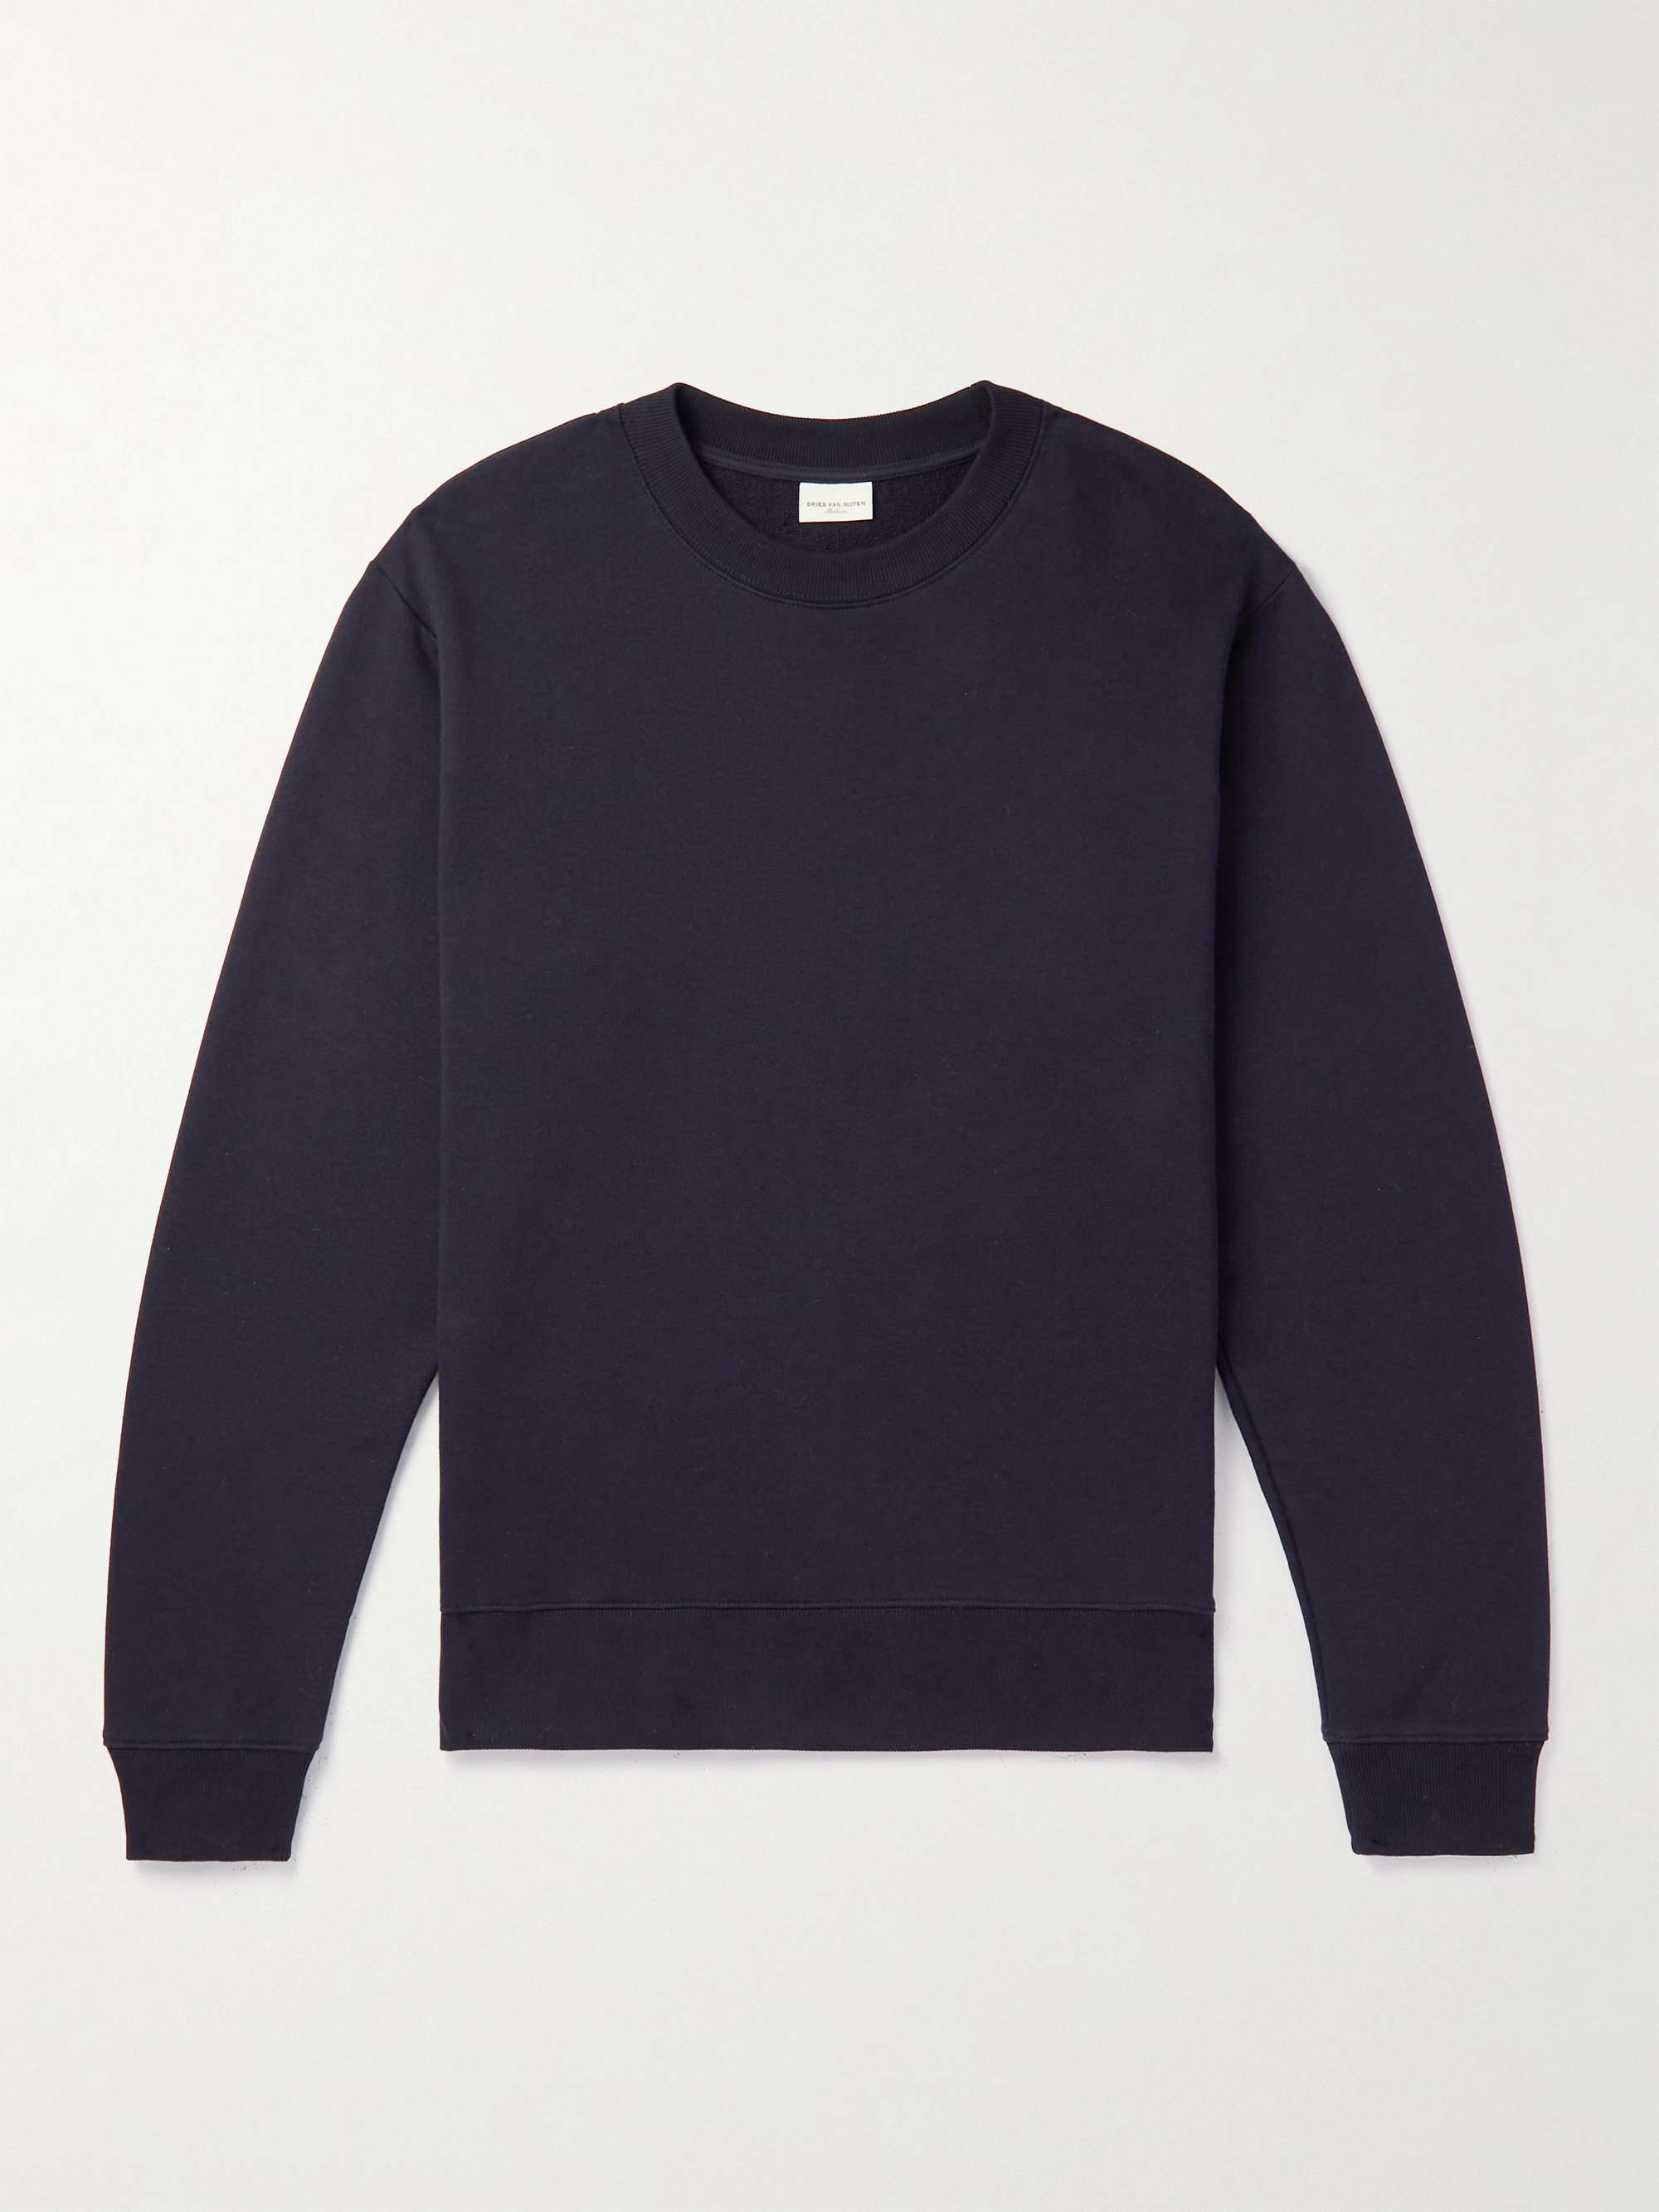 DRIES VAN NOTEN Cotton-Jersey Sweatshirt for Men | MR PORTER